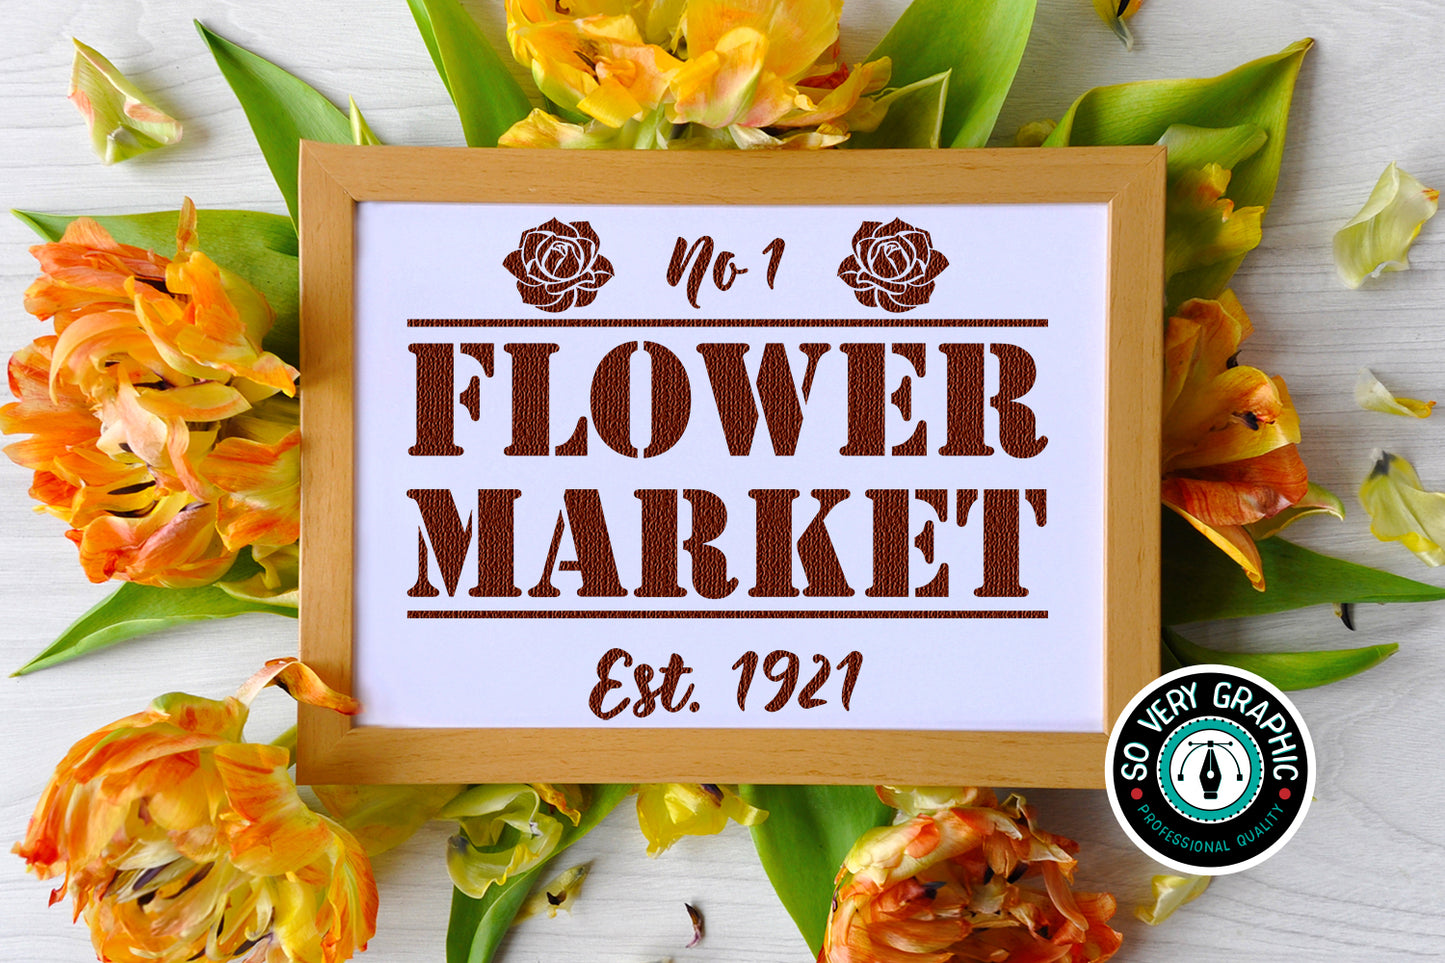 Vintage Flower Market Sign SVG Cut File 